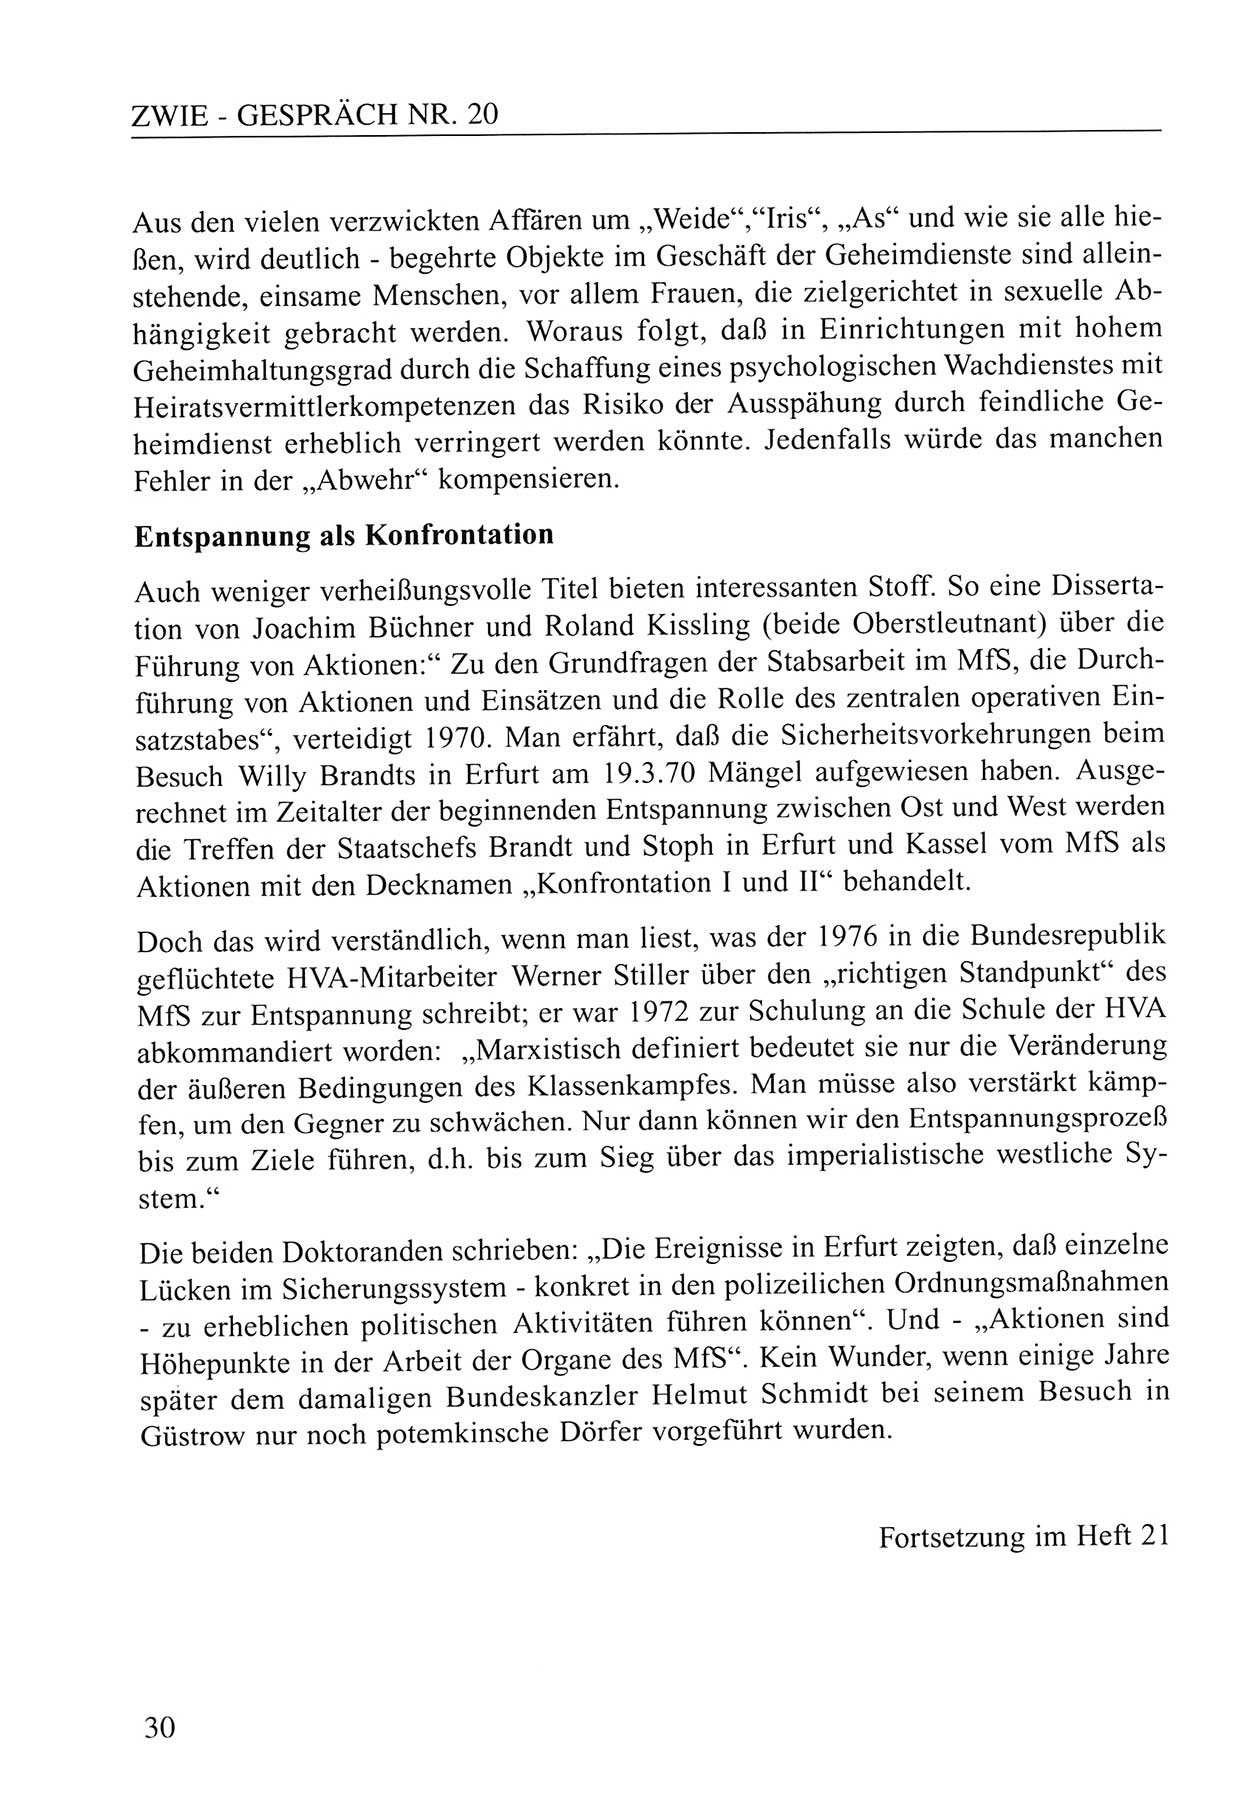 Zwie-Gespräch, Beiträge zum Umgang mit der Staatssicherheits-Vergangenheit [Deutsche Demokratische Republik (DDR)], Ausgabe Nr. 20, Berlin 1994, Seite 30 (Zwie-Gespr. Ausg. 20 1994, S. 30)